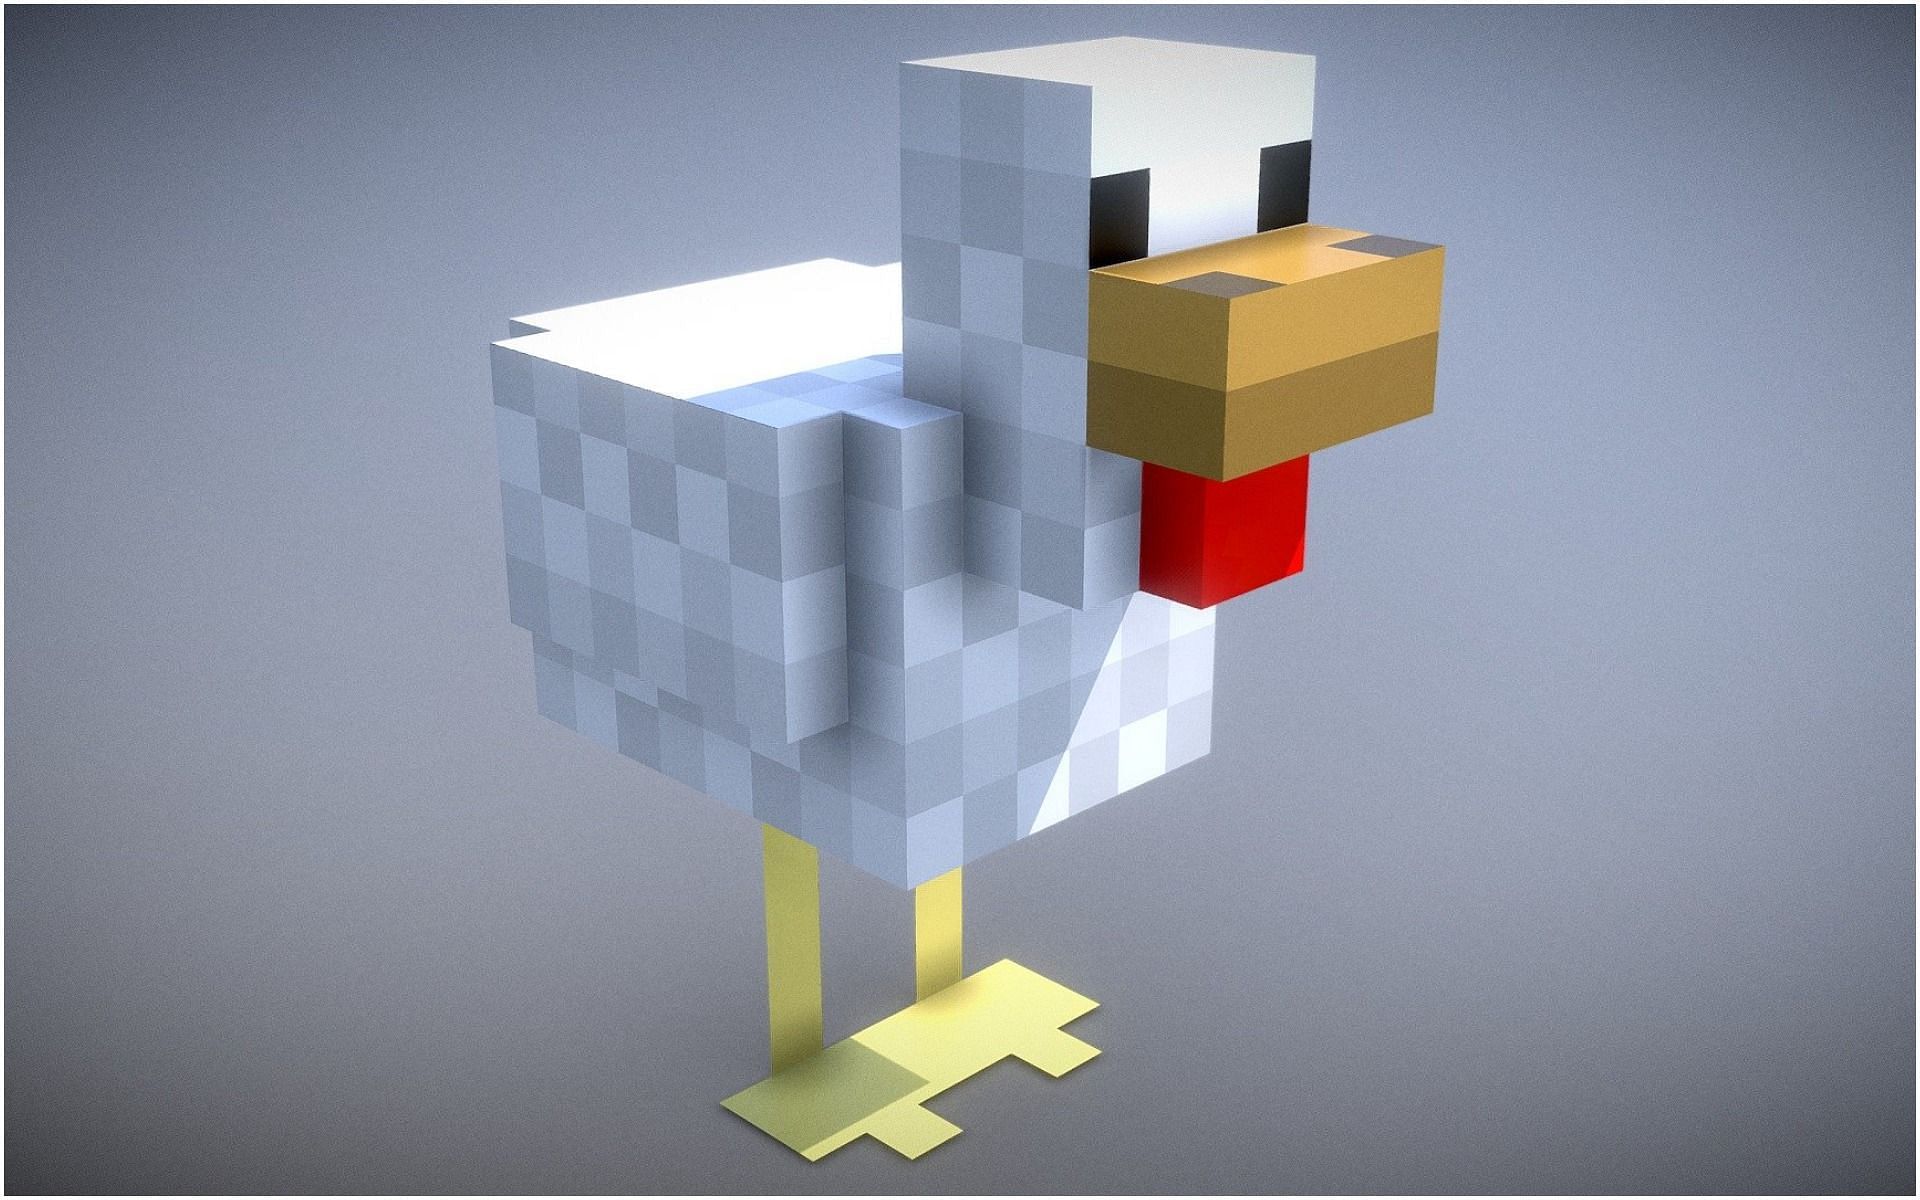 A chicken from Minecraft (Image via Sketchfab/Vincent Yanez)